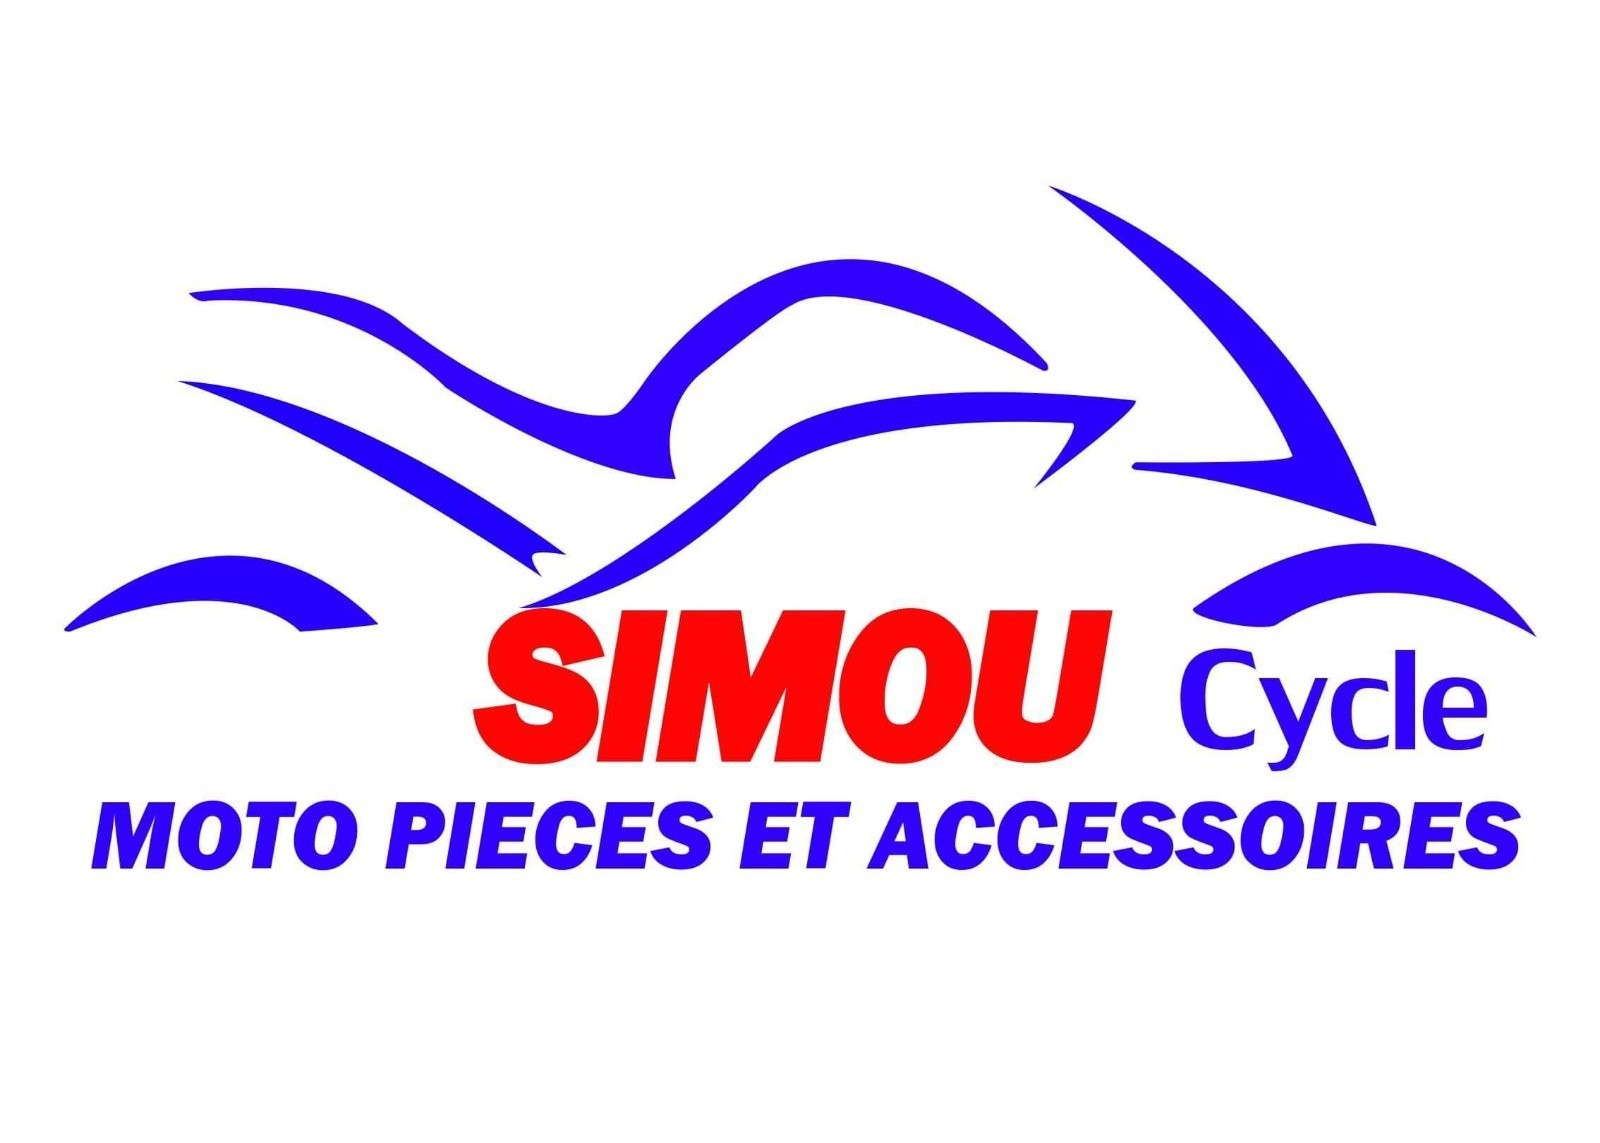 SIMOU CYCLE